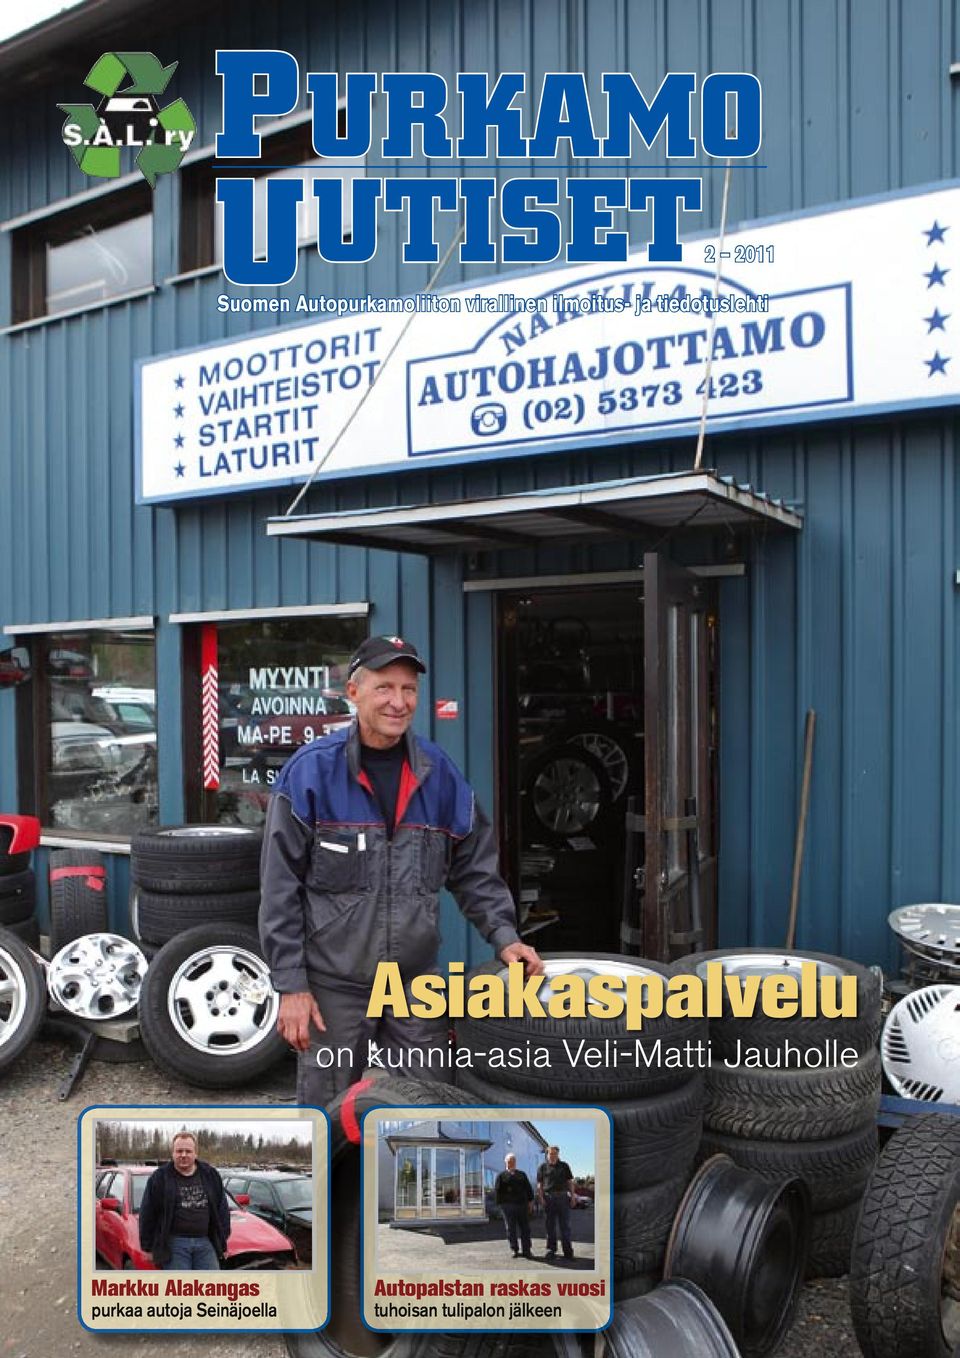 Veli-Matti Jauholle Markku Alakangas purkaa autoja